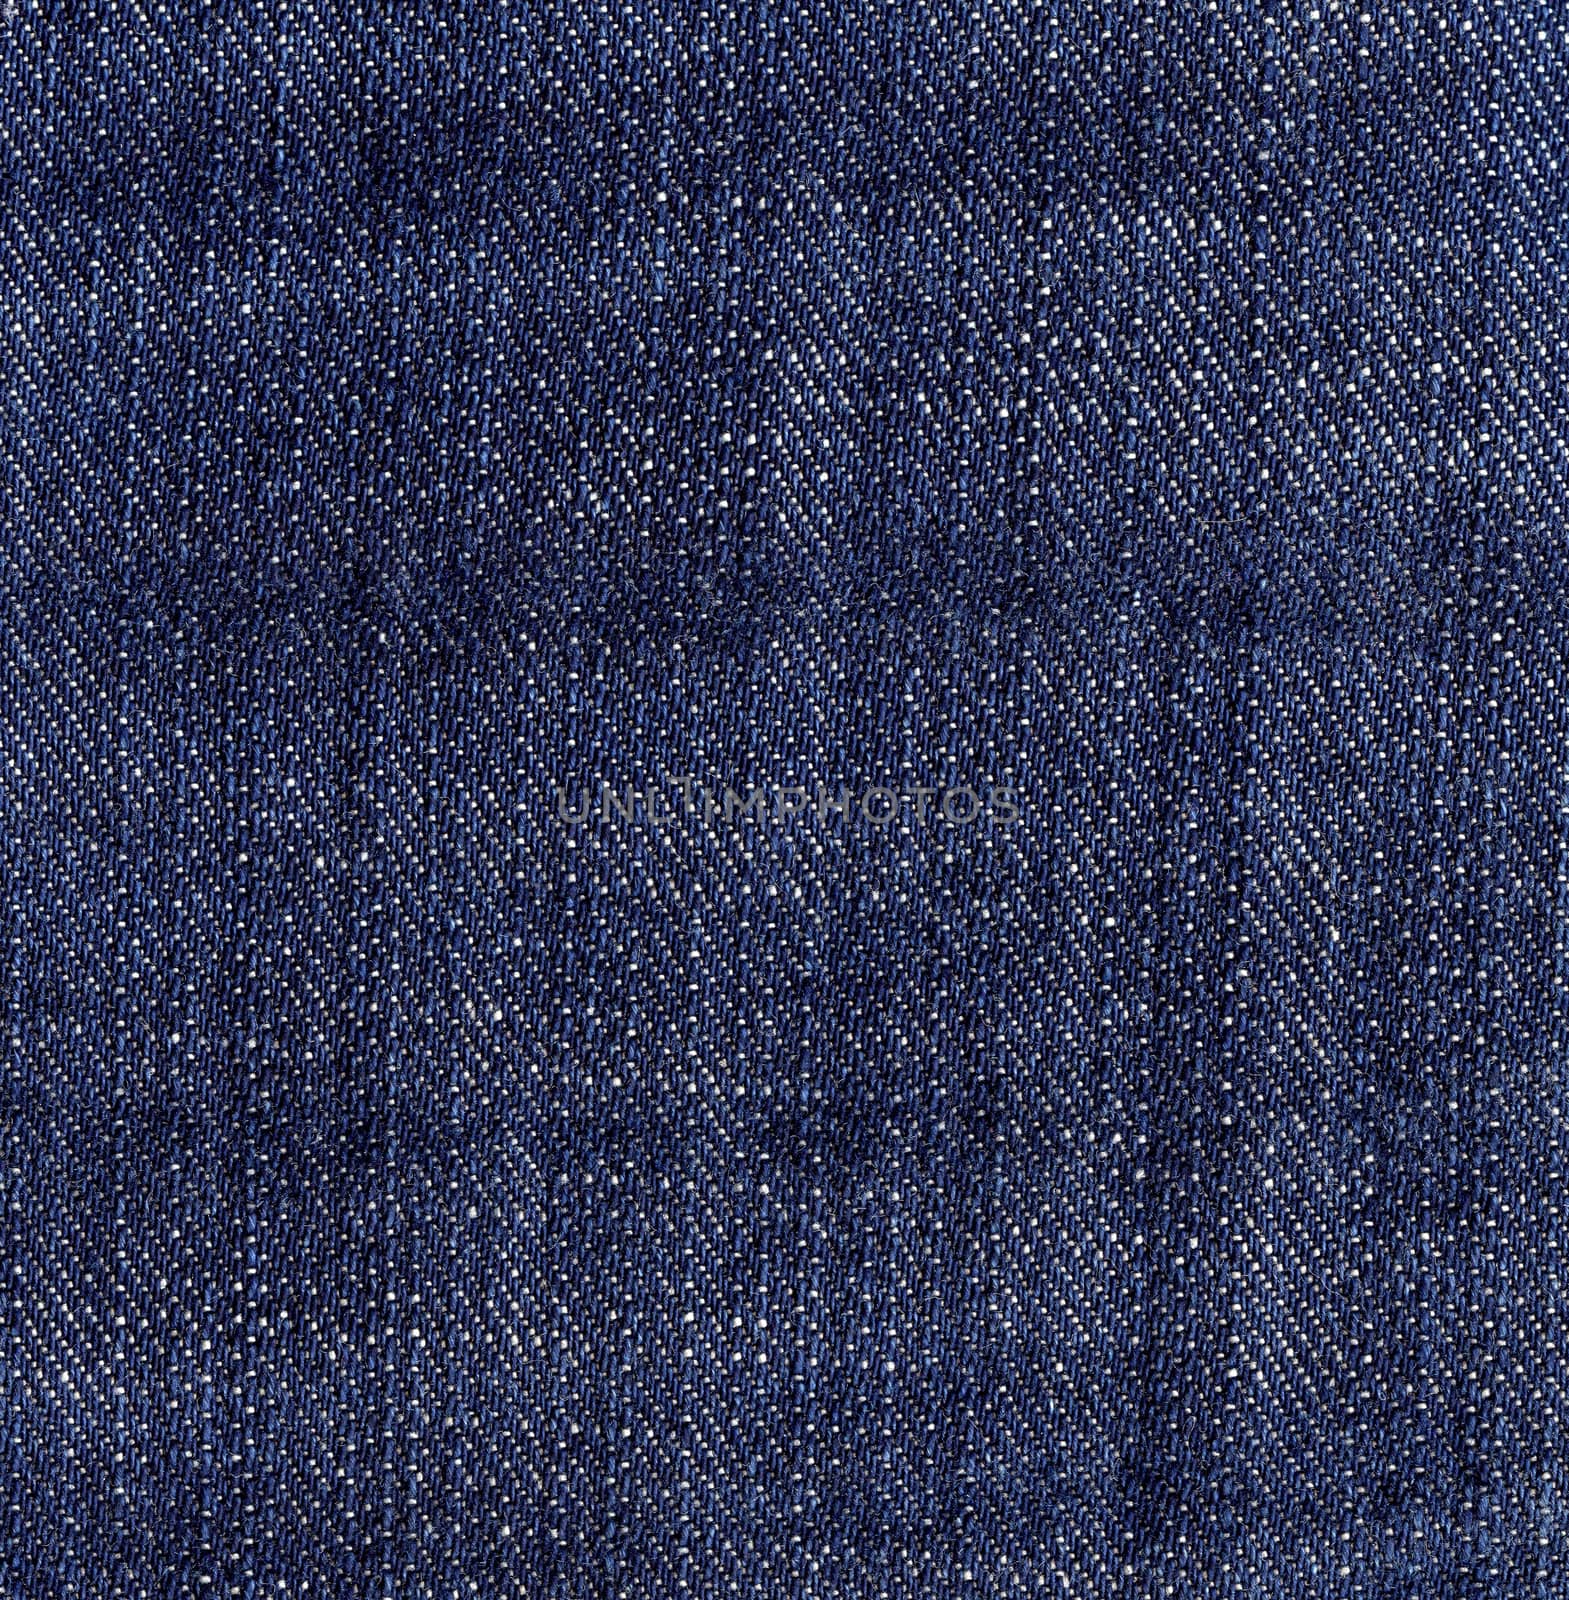 Dark Blue Jeans Denim Texture by ESSL